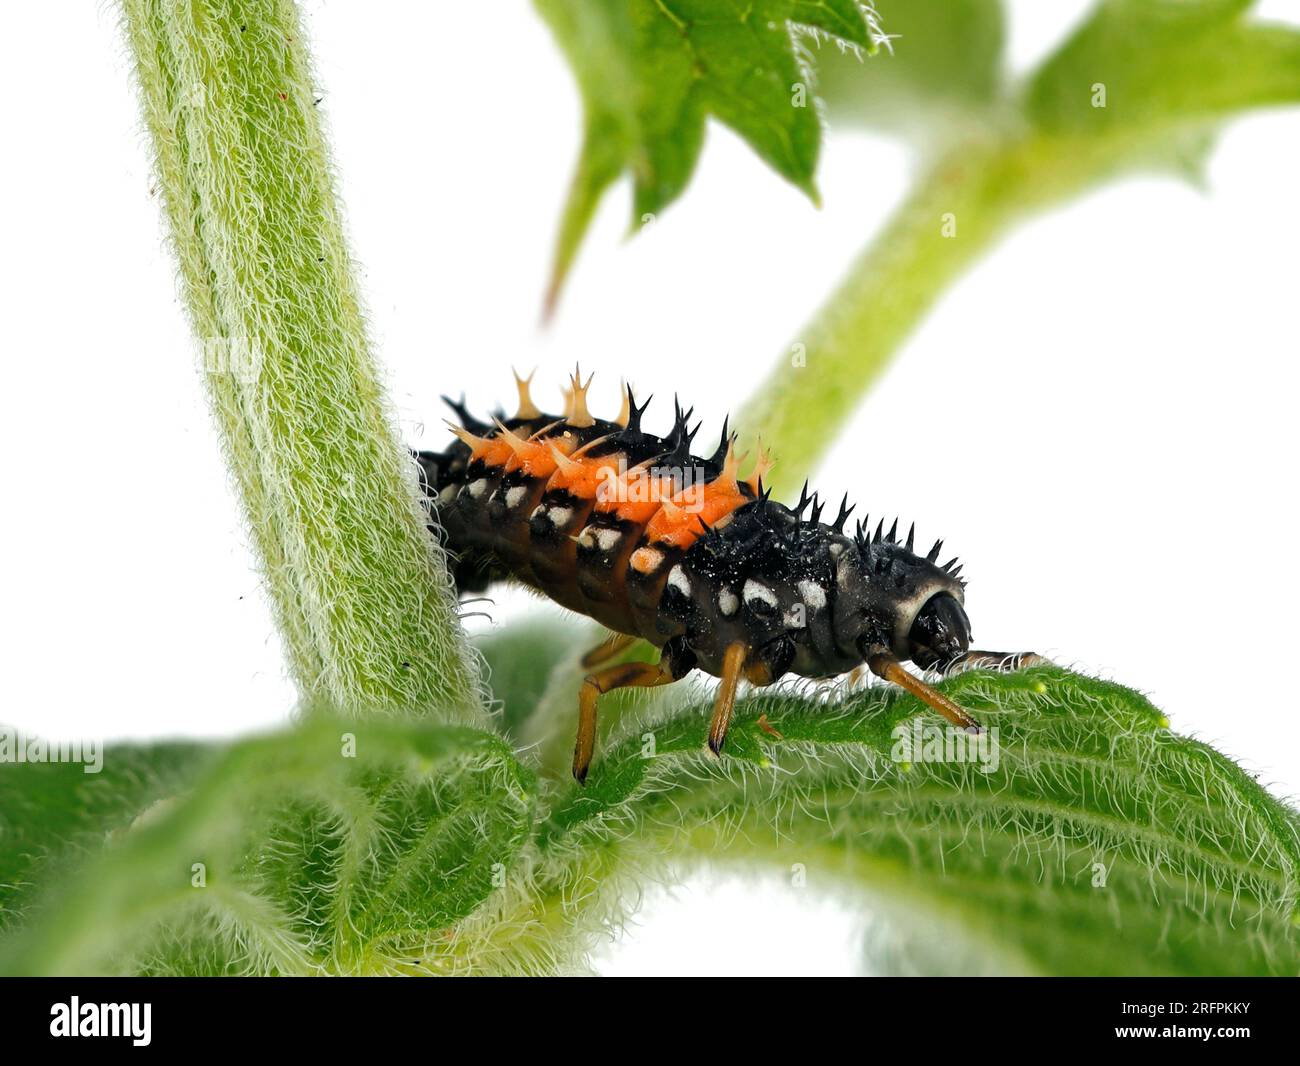 Larva of a ladybug, Harmonia axyridis on mint plant isolated on white background, close up of a ladybeetle larva Stock Photo